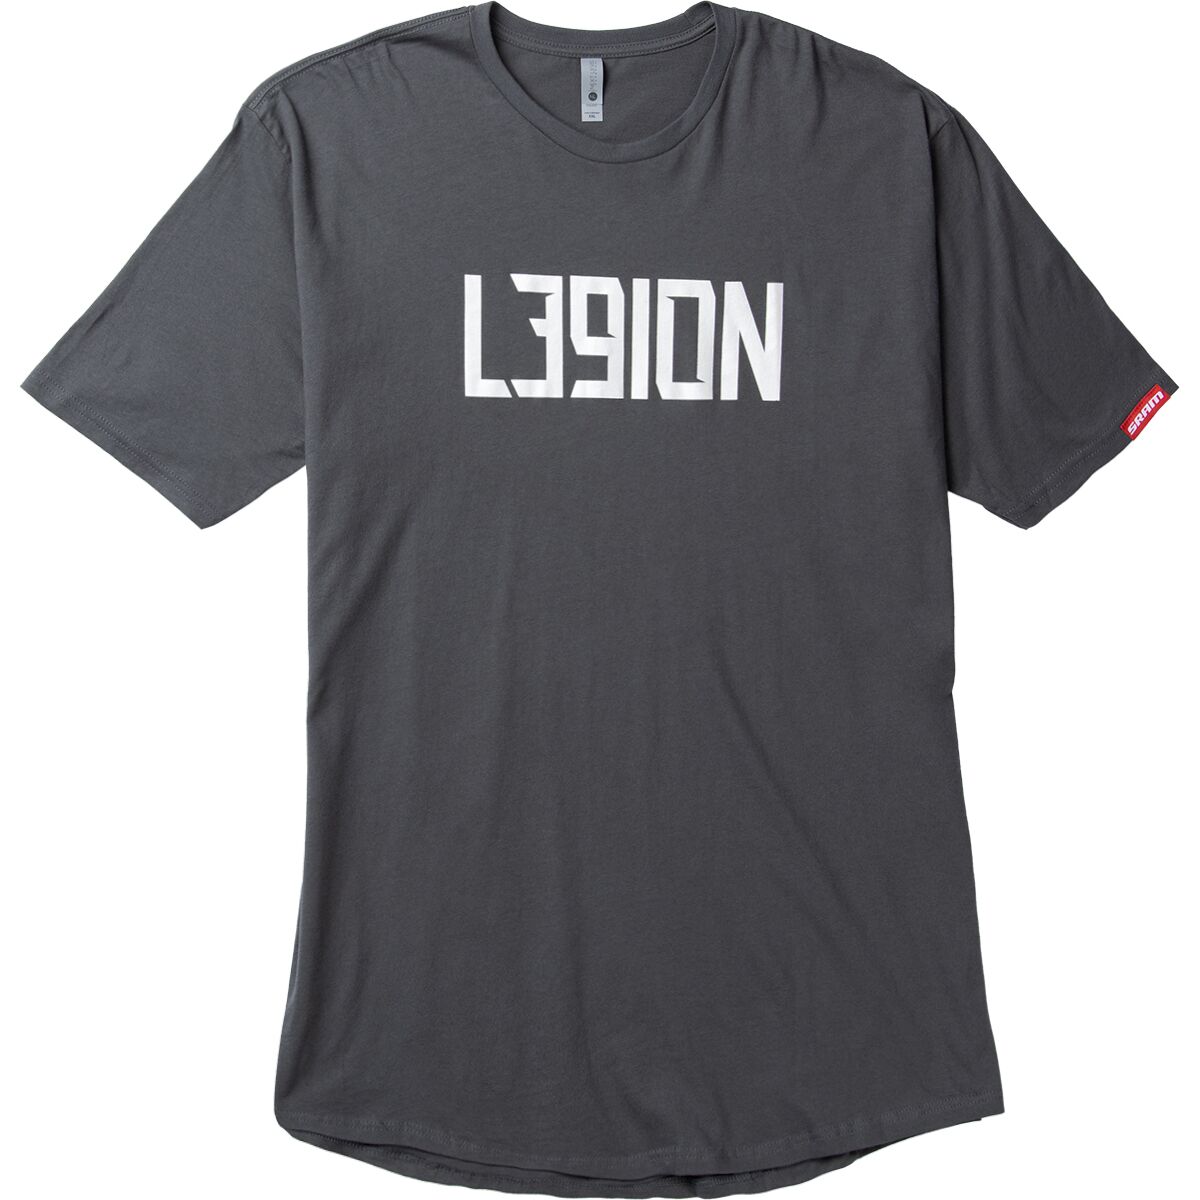 SRAM L39ION Extended Hem T-Shirt - Men's